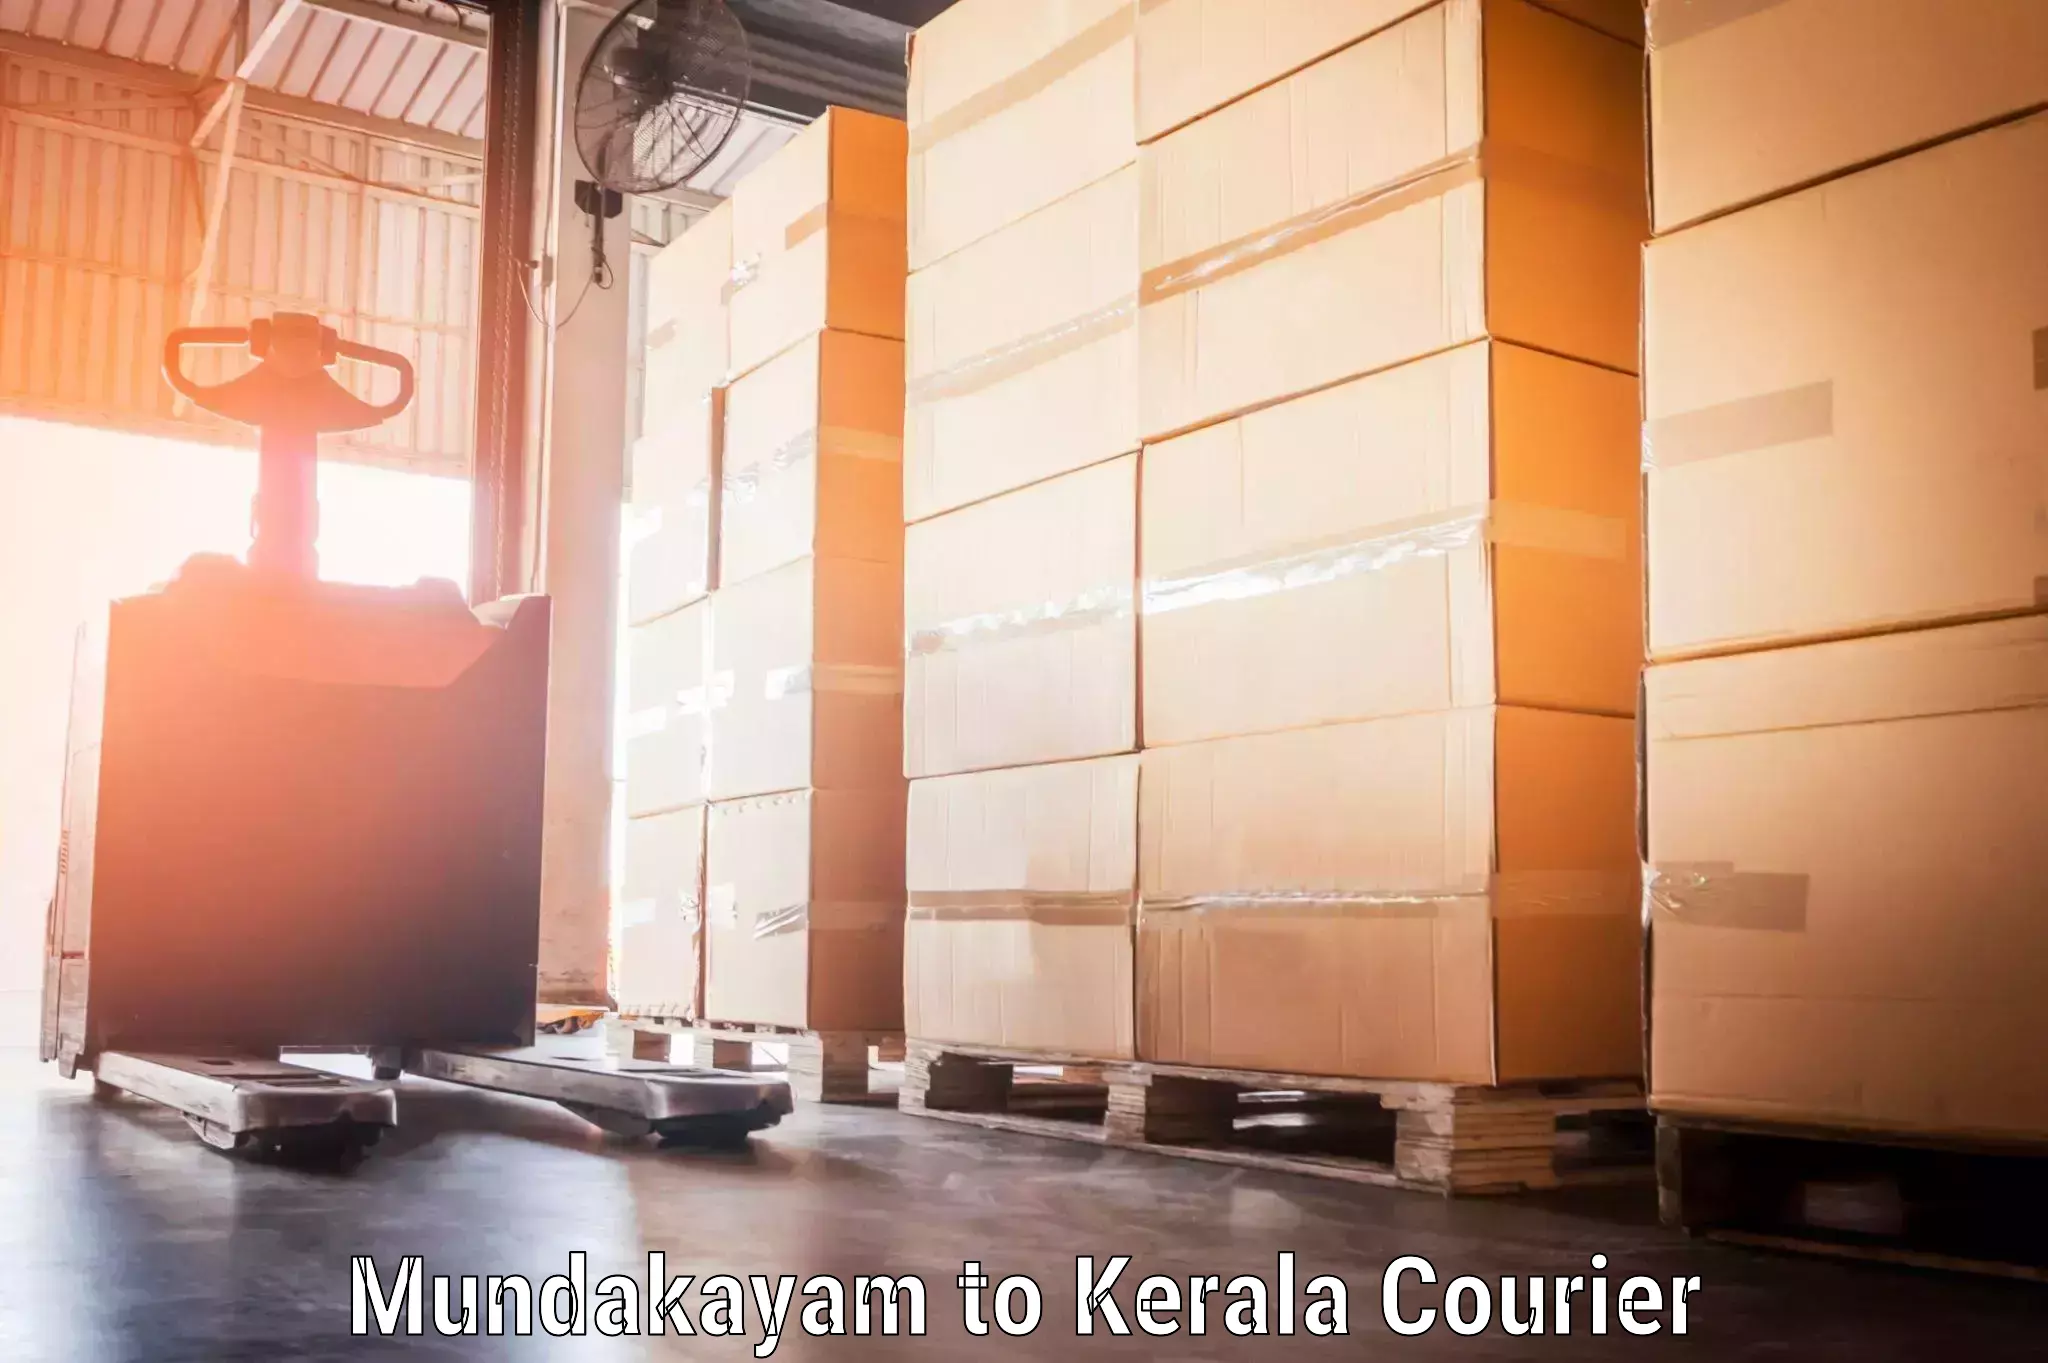 Baggage delivery management Mundakayam to Kerala